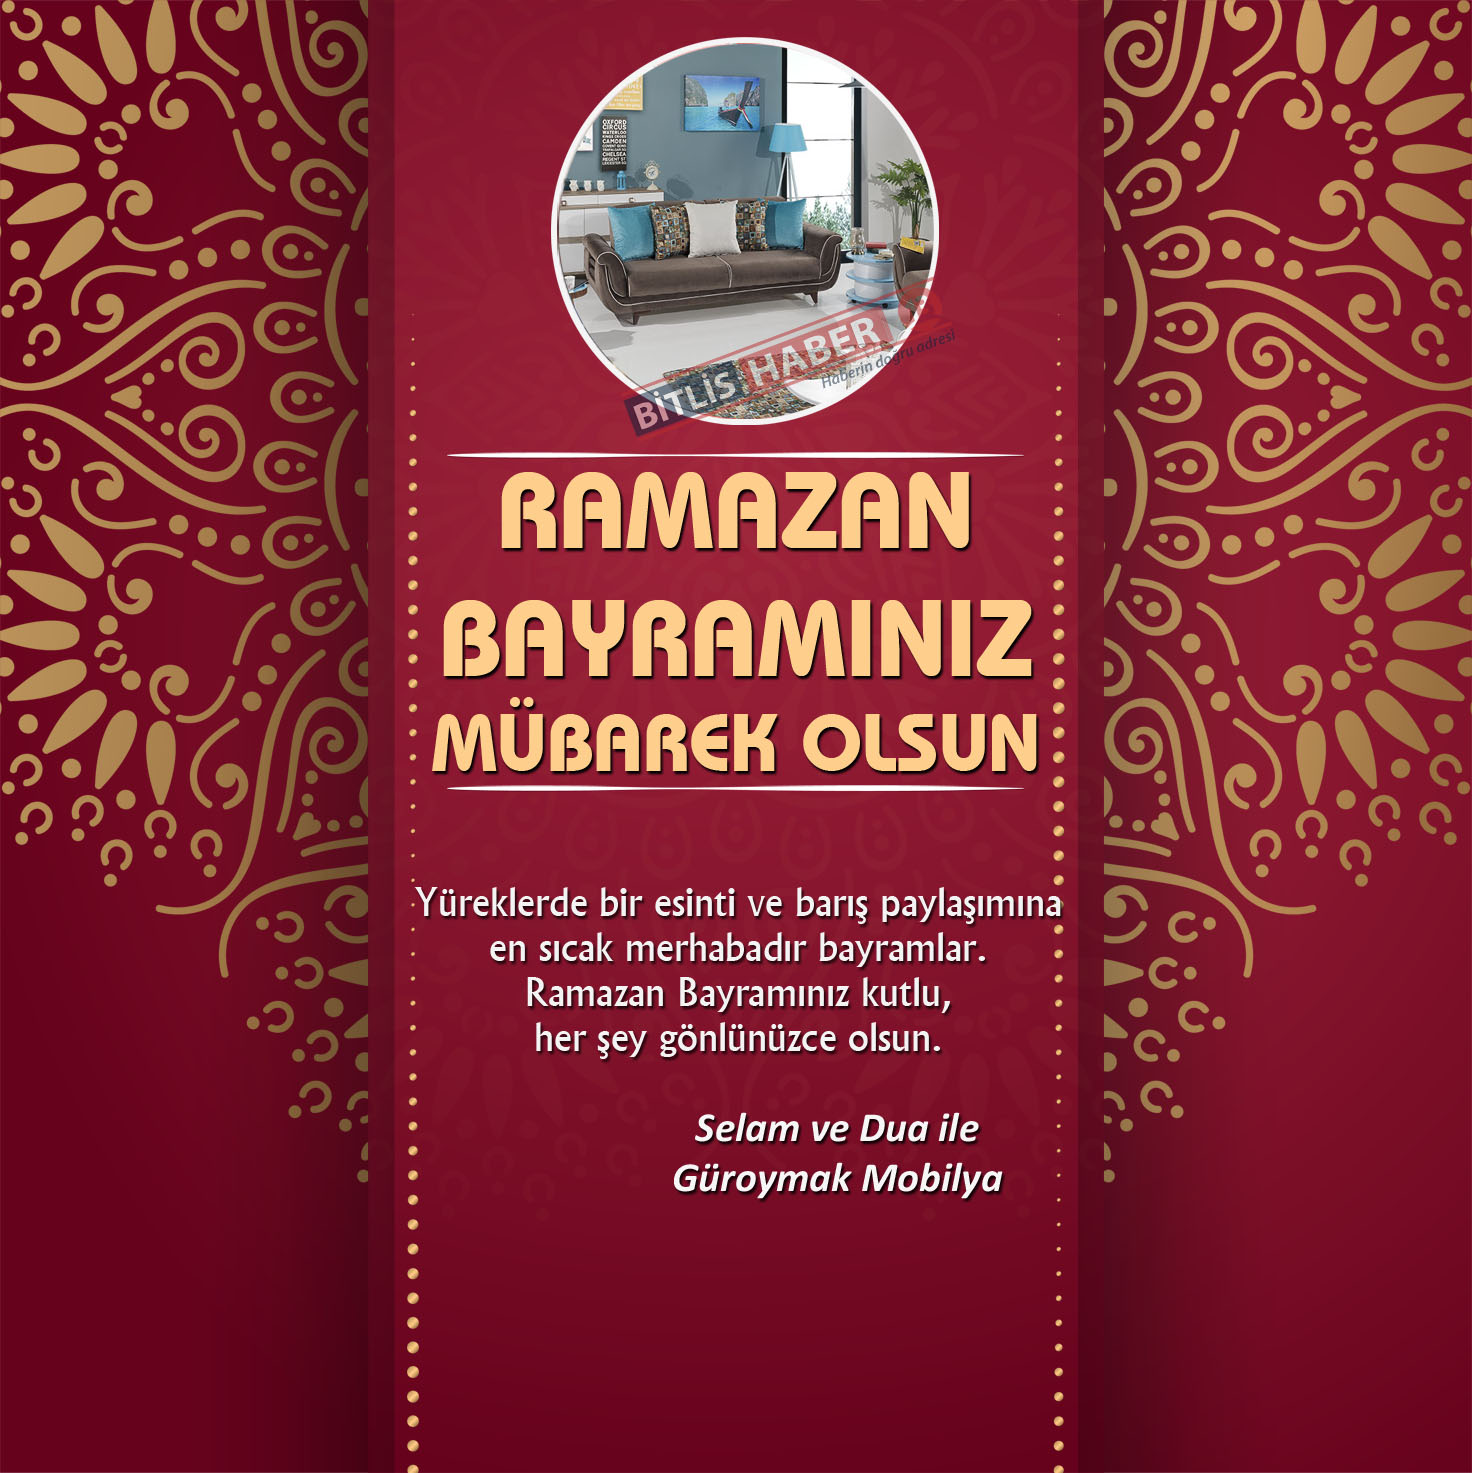 Bitlis ve ilçelerinde siyasi, kurum amirleri ve iş adamlarından Ramazan Bayramı sebebiyle birer mesaj yayınladı.
